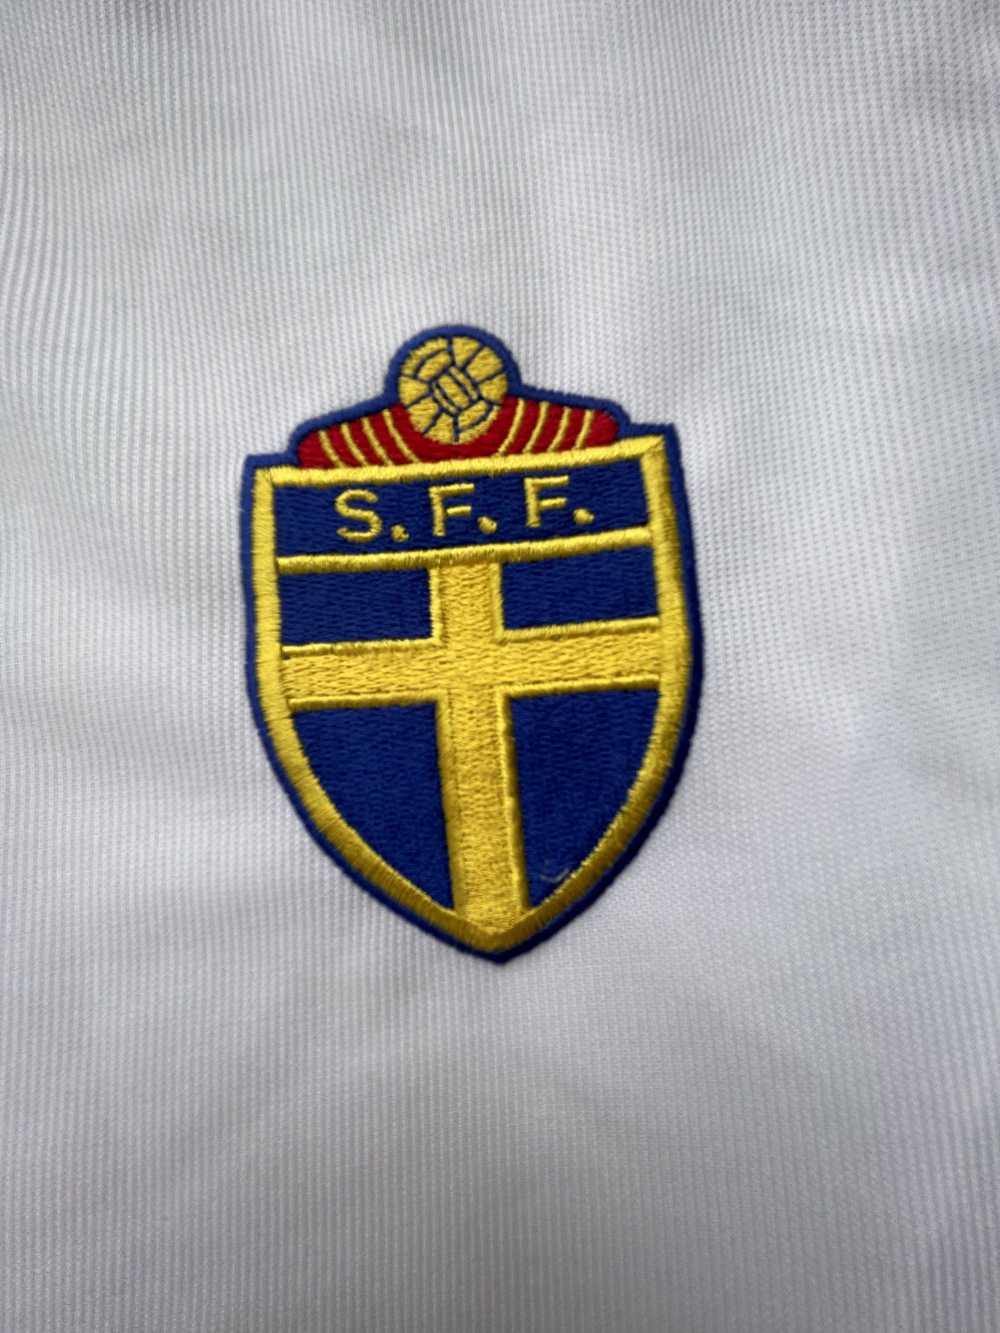 Adidas Vintage Sweden Soccer Jersey - image 3